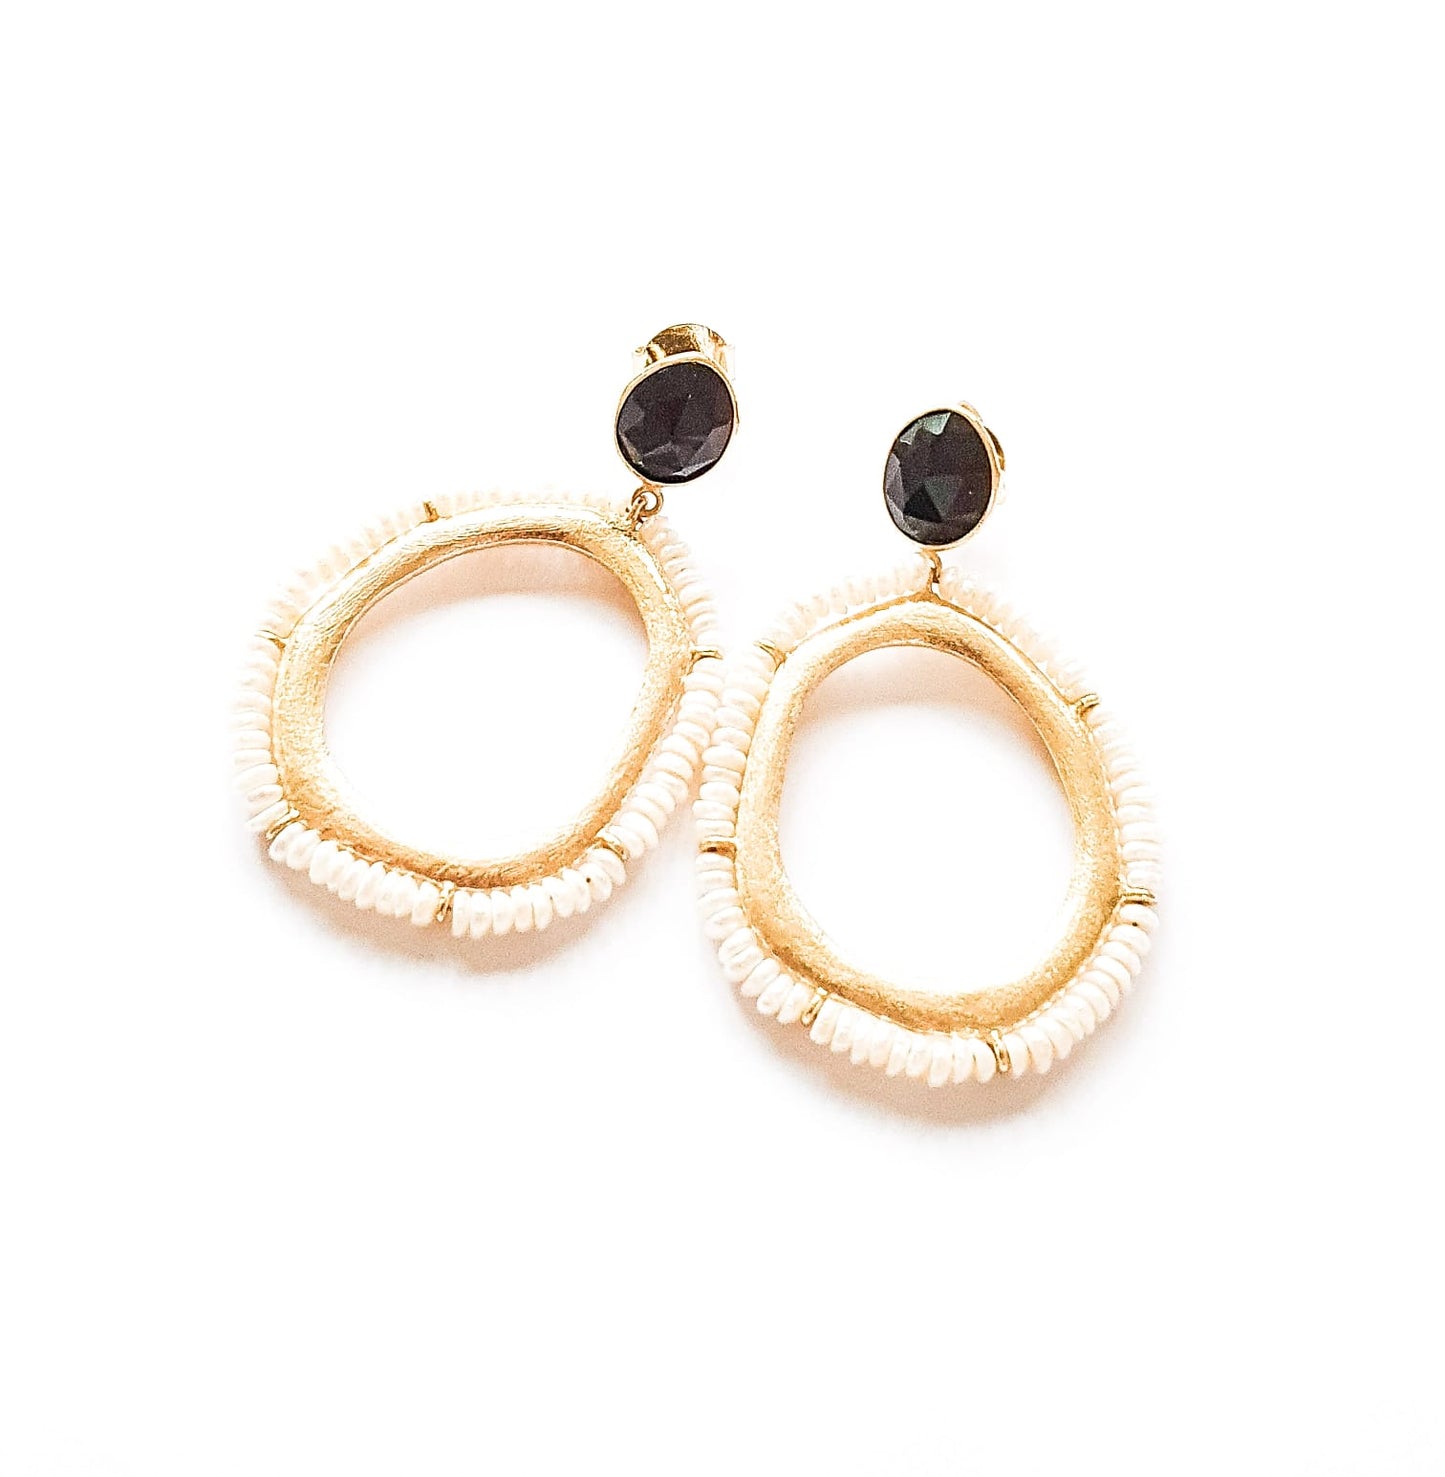 Onyx and Pearl Hoop Earrings